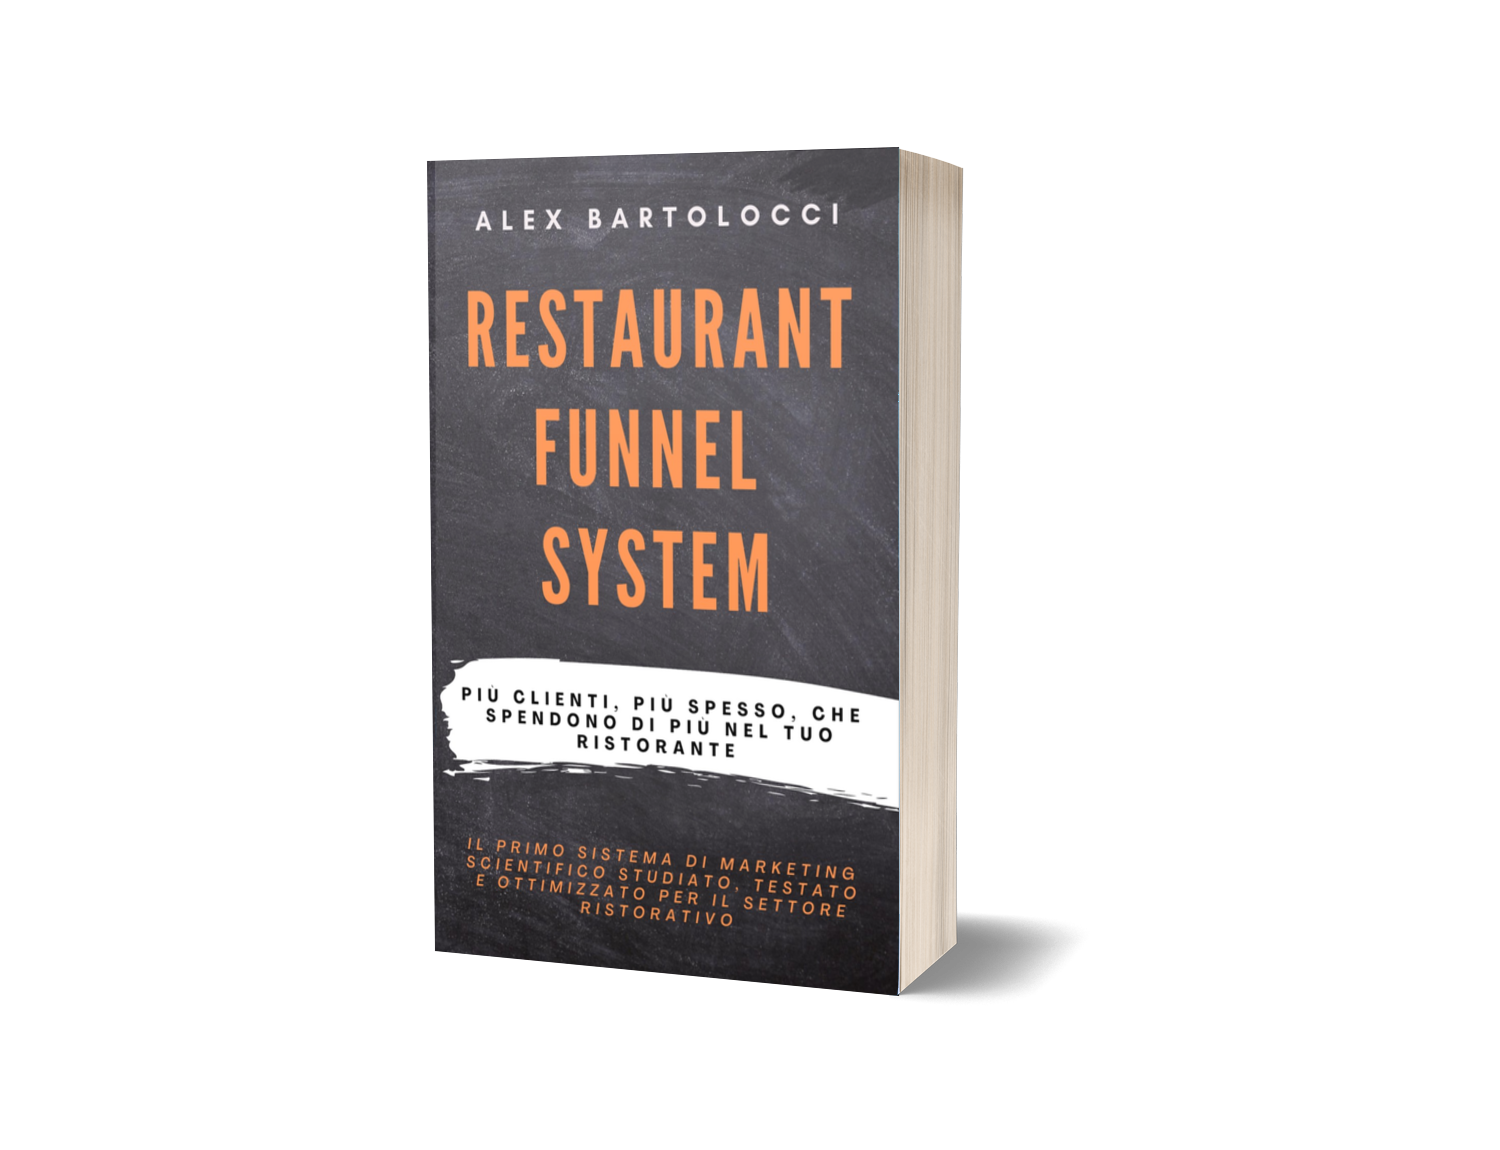 Restaurant Funnel System - il libro che promette di farti trovare più clienti, più spesso, che spendono di più nel tuo ristorante